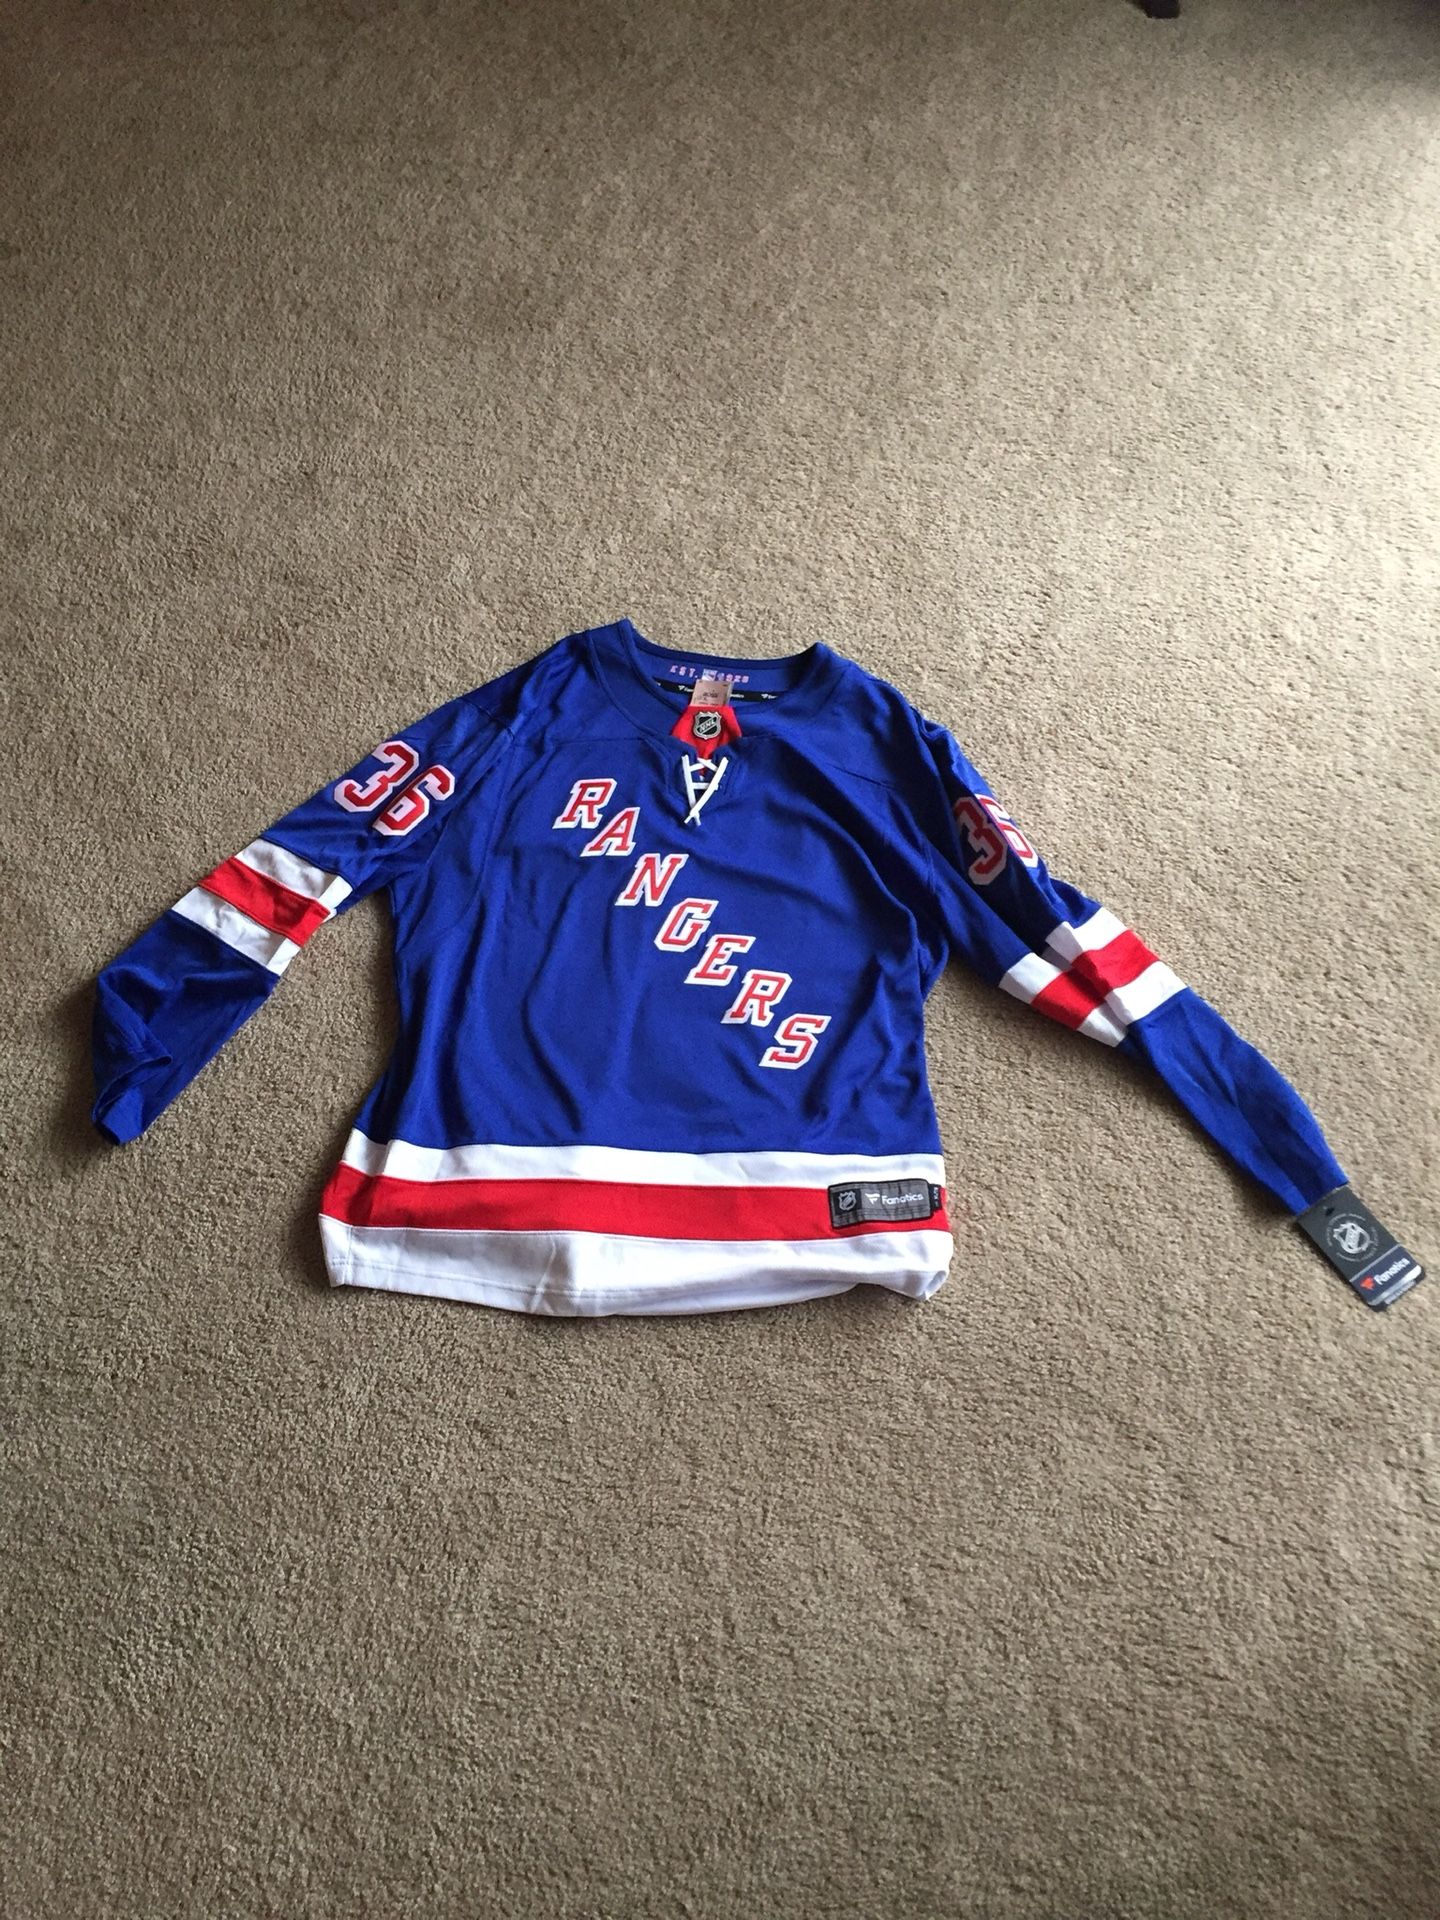 Mats Zuccarello New York Rangers Jersey Brand new